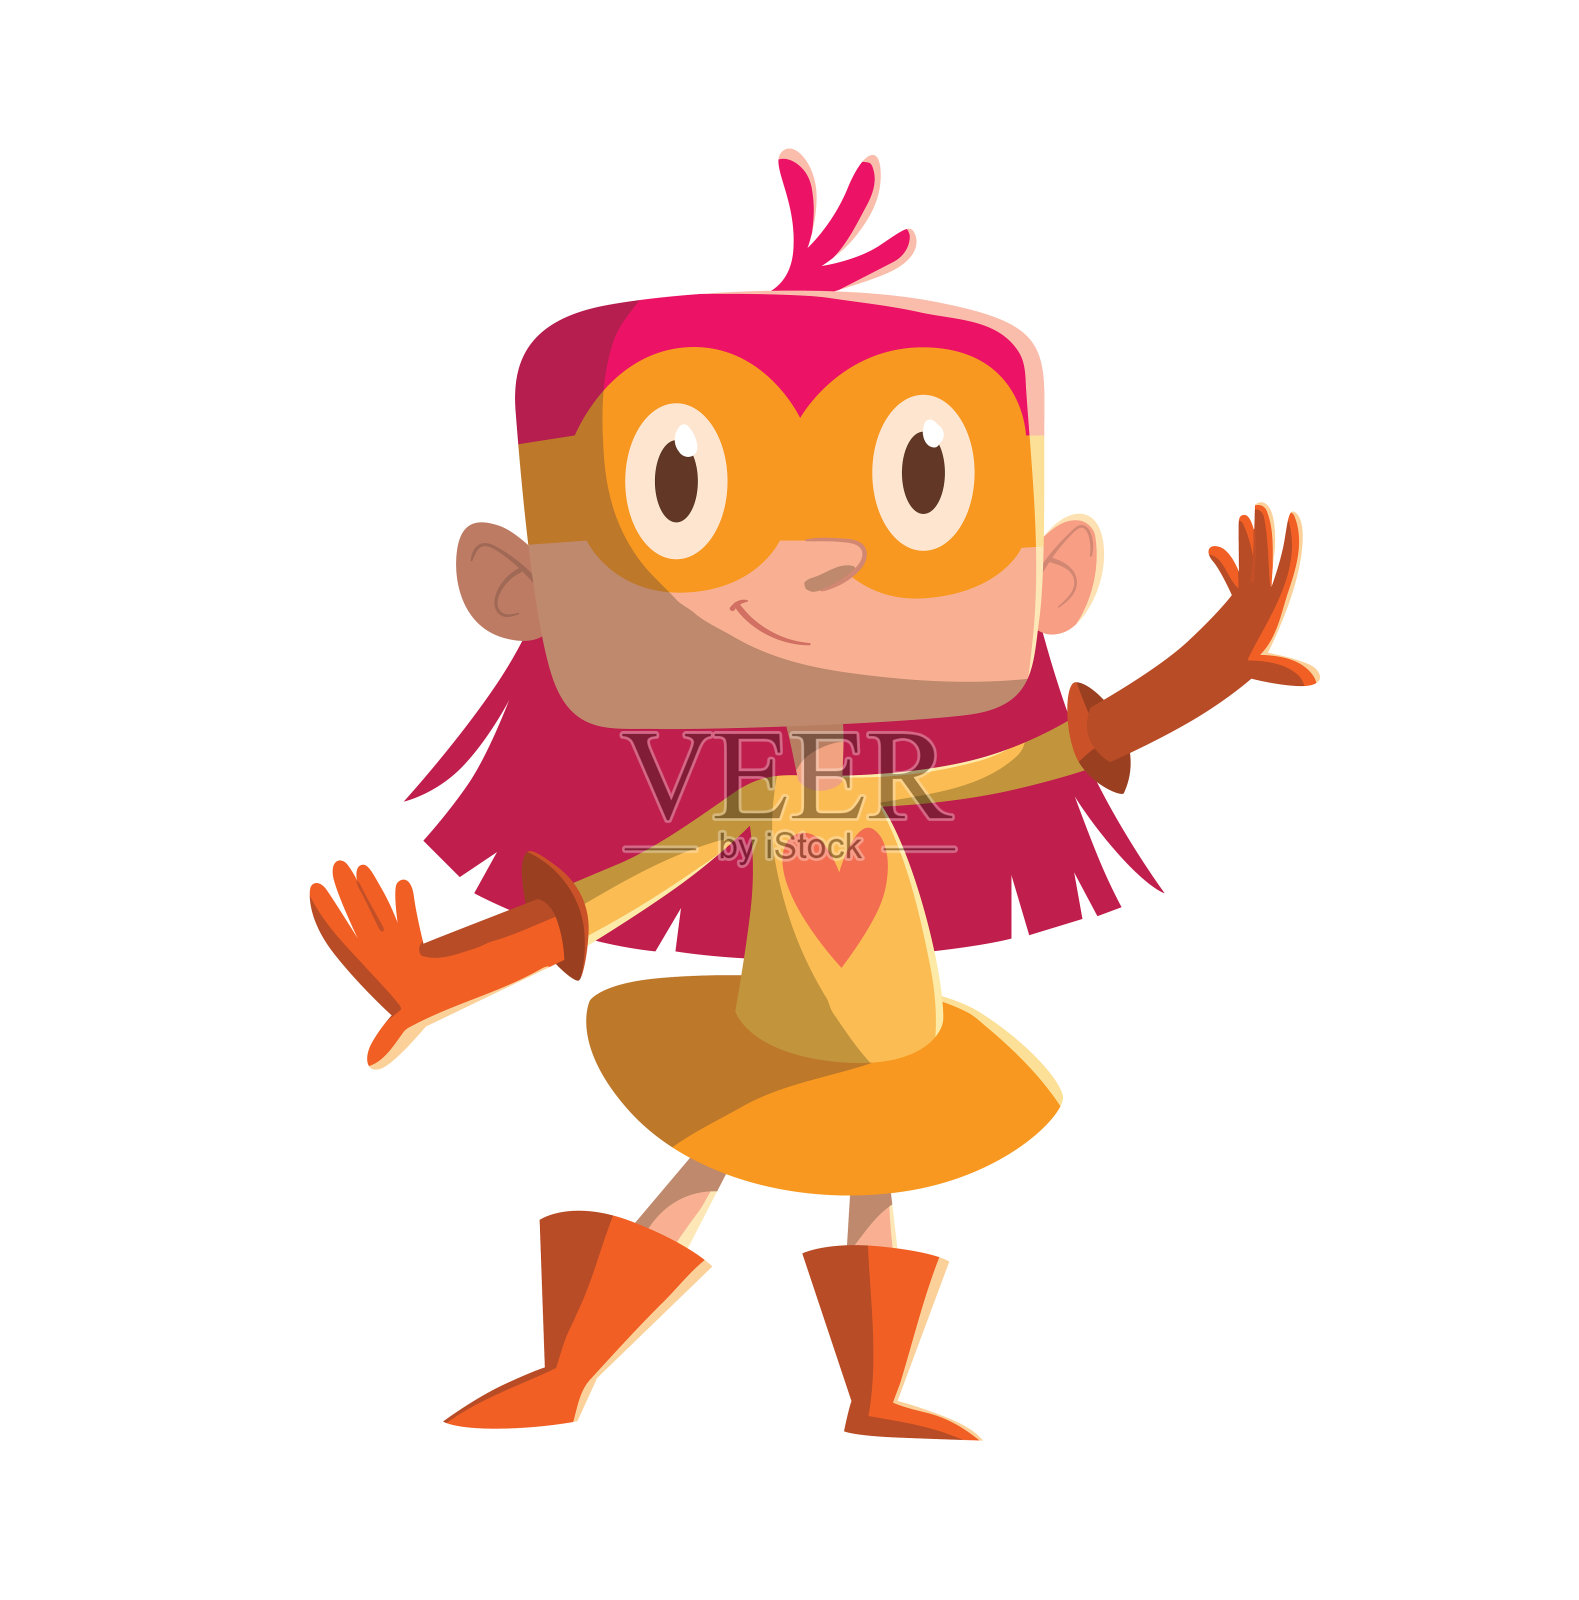 穿着橙色超级英雄服装的有趣小女孩设计元素图片